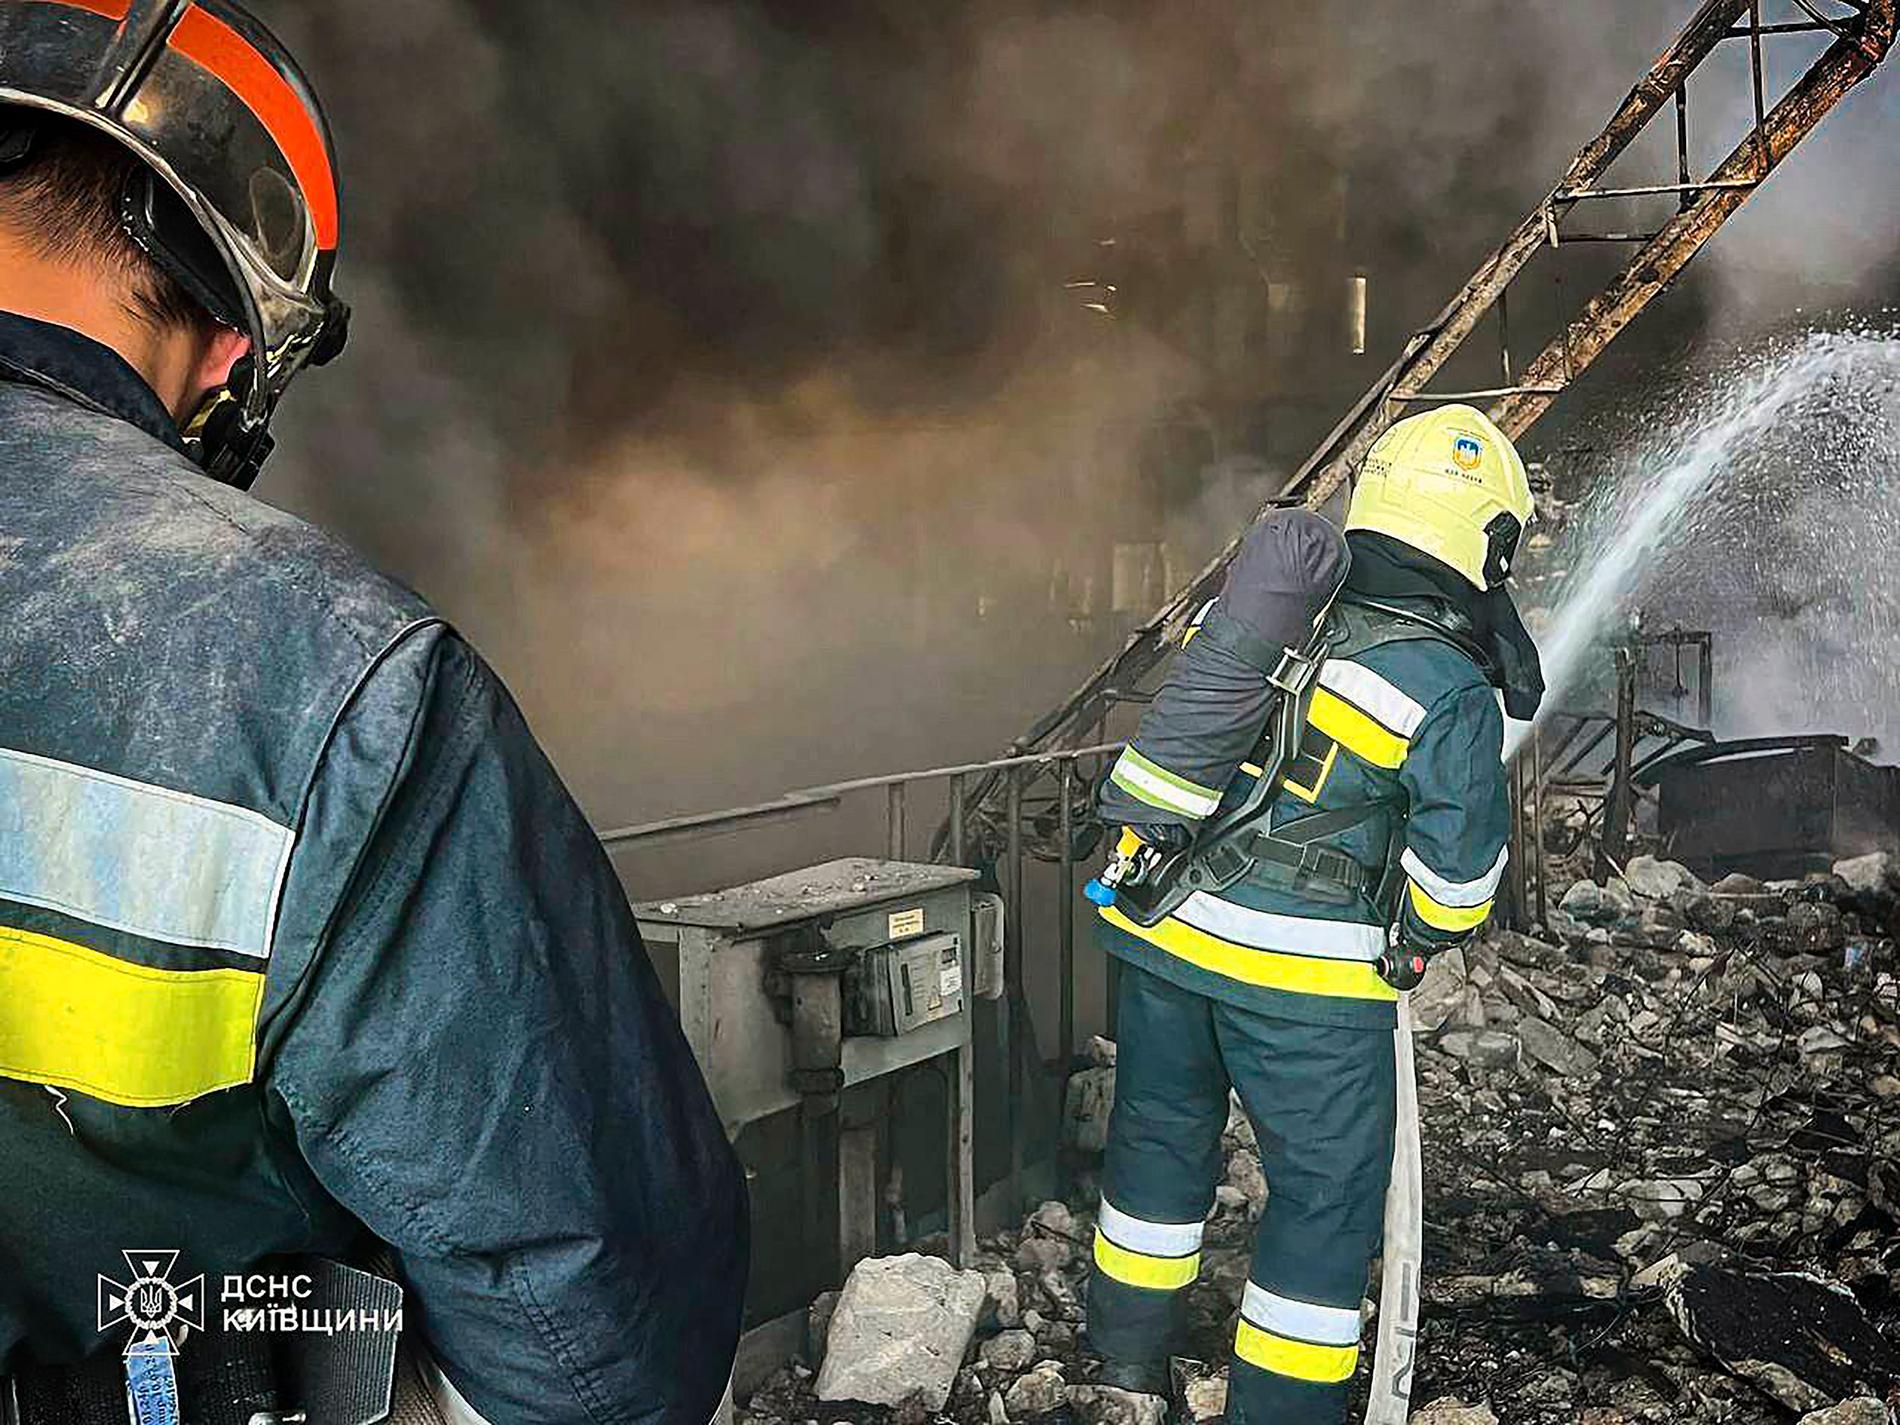 Brandmän kämpar för att släcka en brand efter den ryska attacken mot kraftverket Trypilska den 11 april.